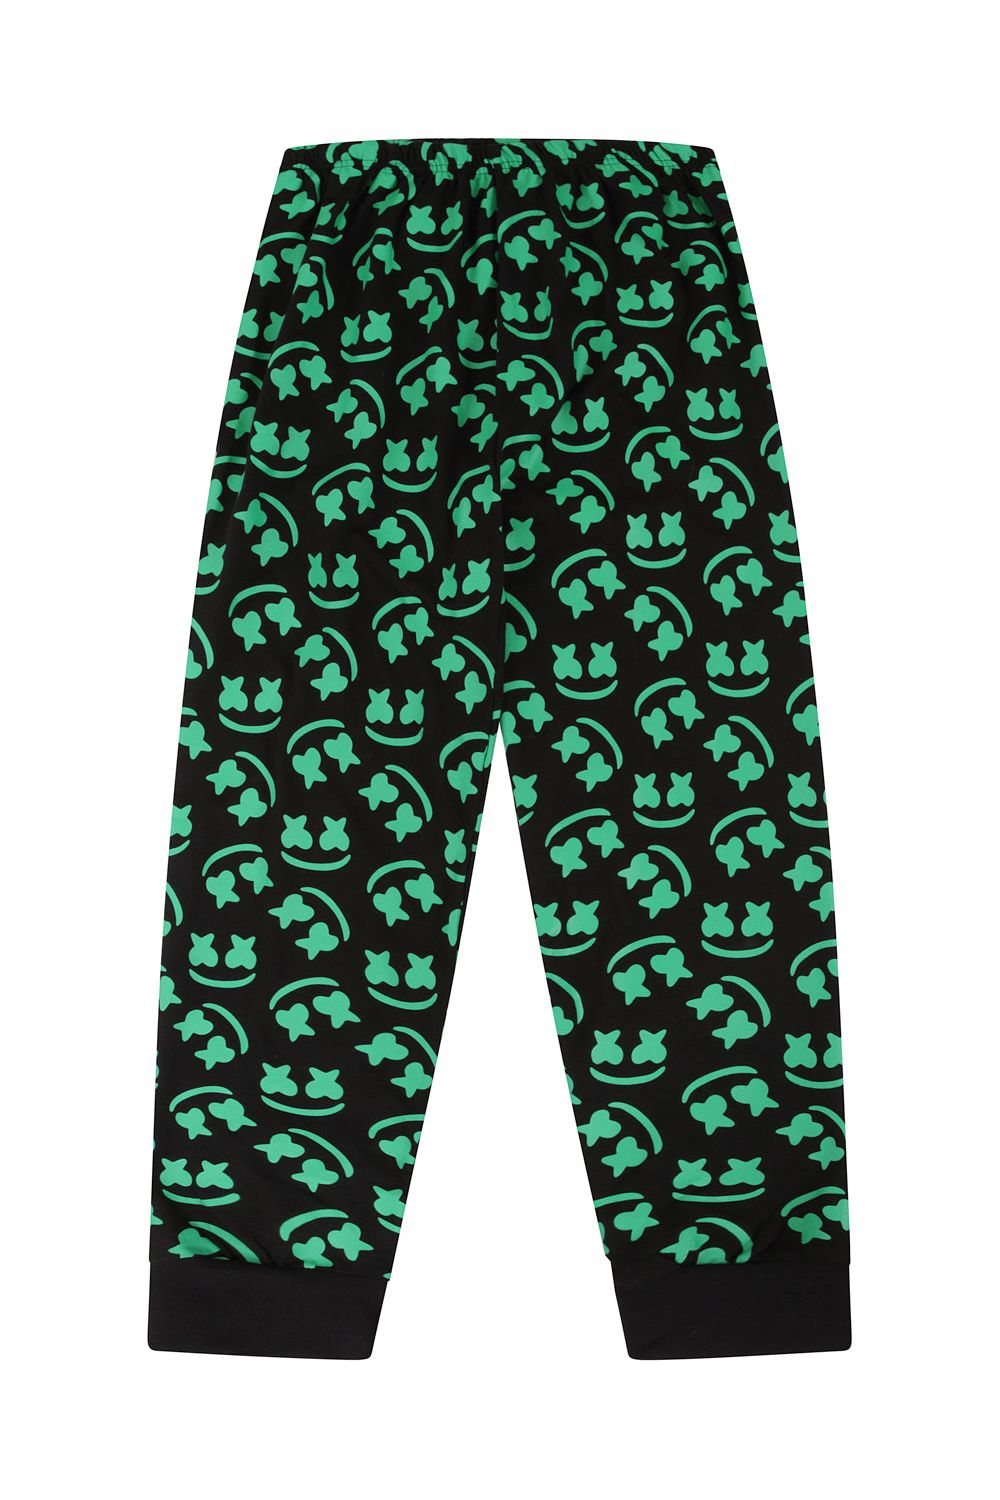 Marshmellow Gamer Youtuber Green Long Pyjamas - Pyjamas.com